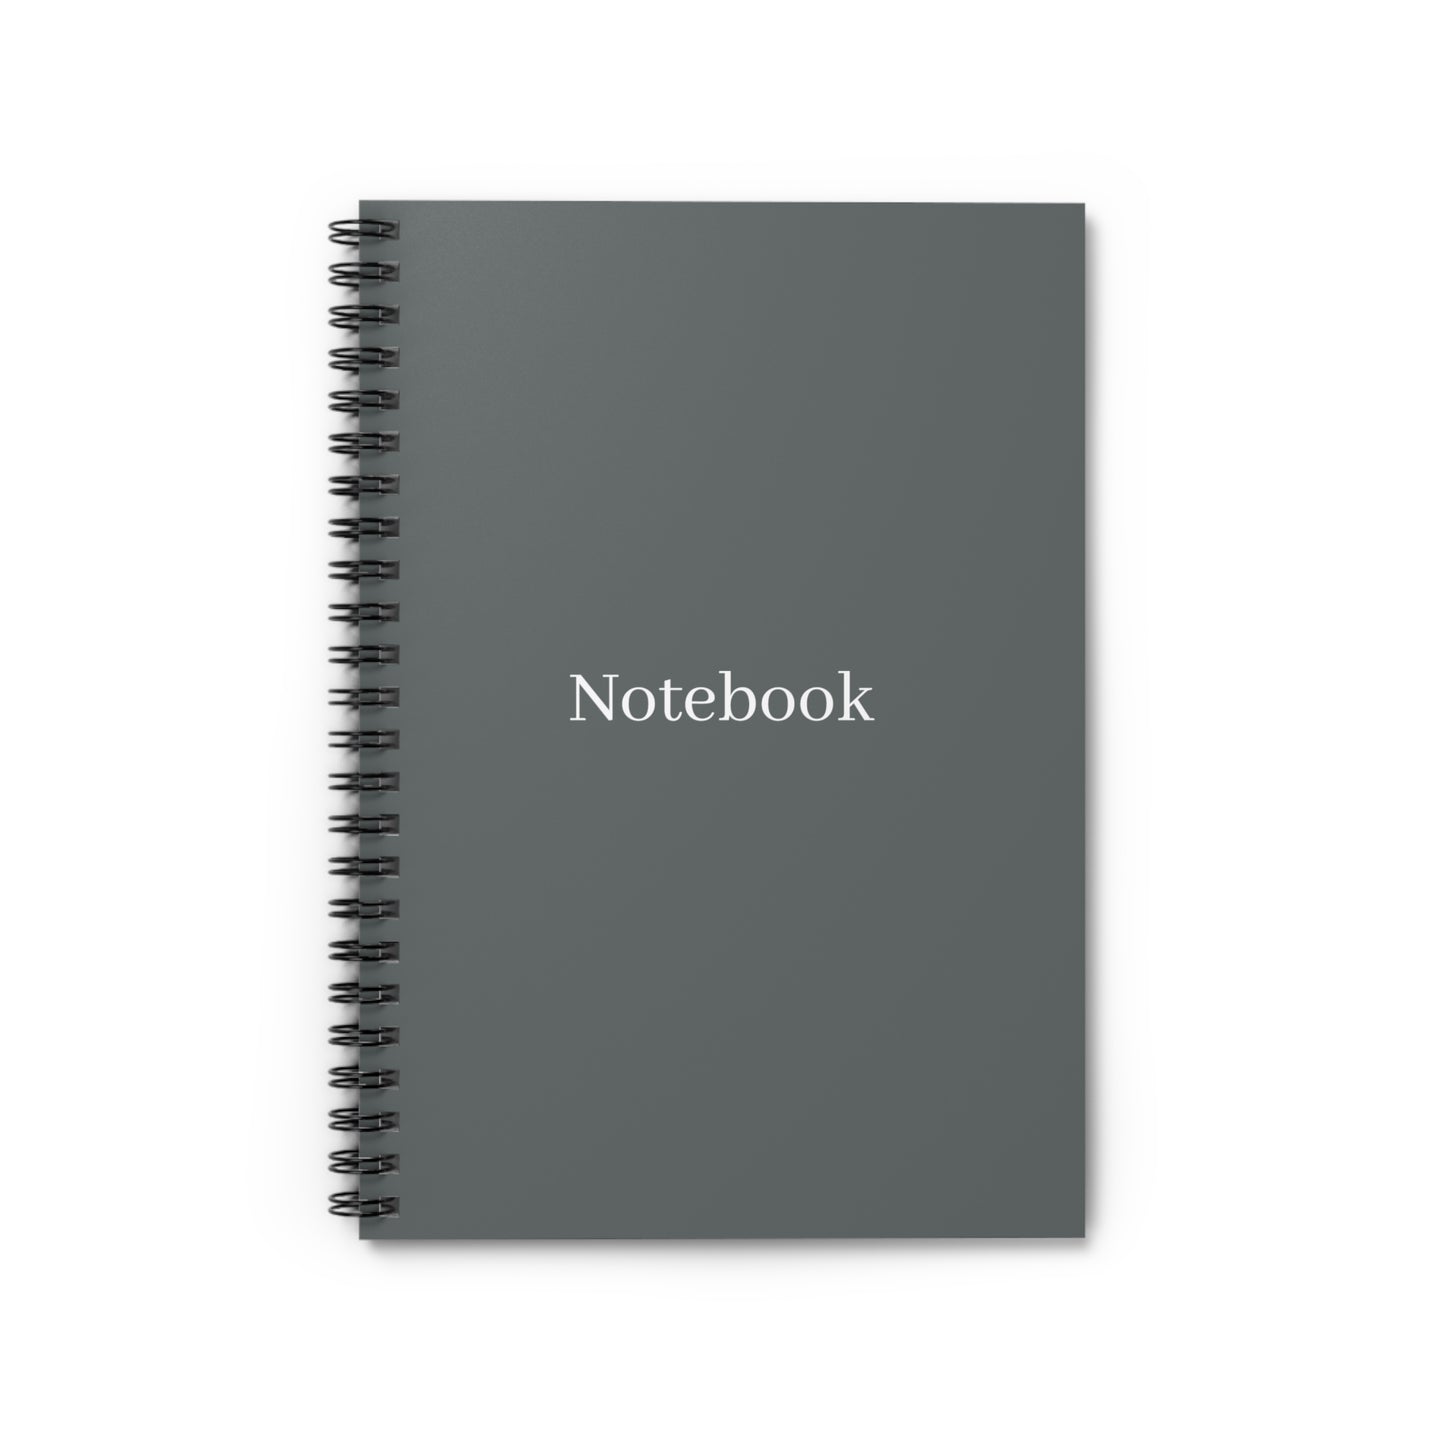 Dark Grey Spiral Notebook - Ruled Line